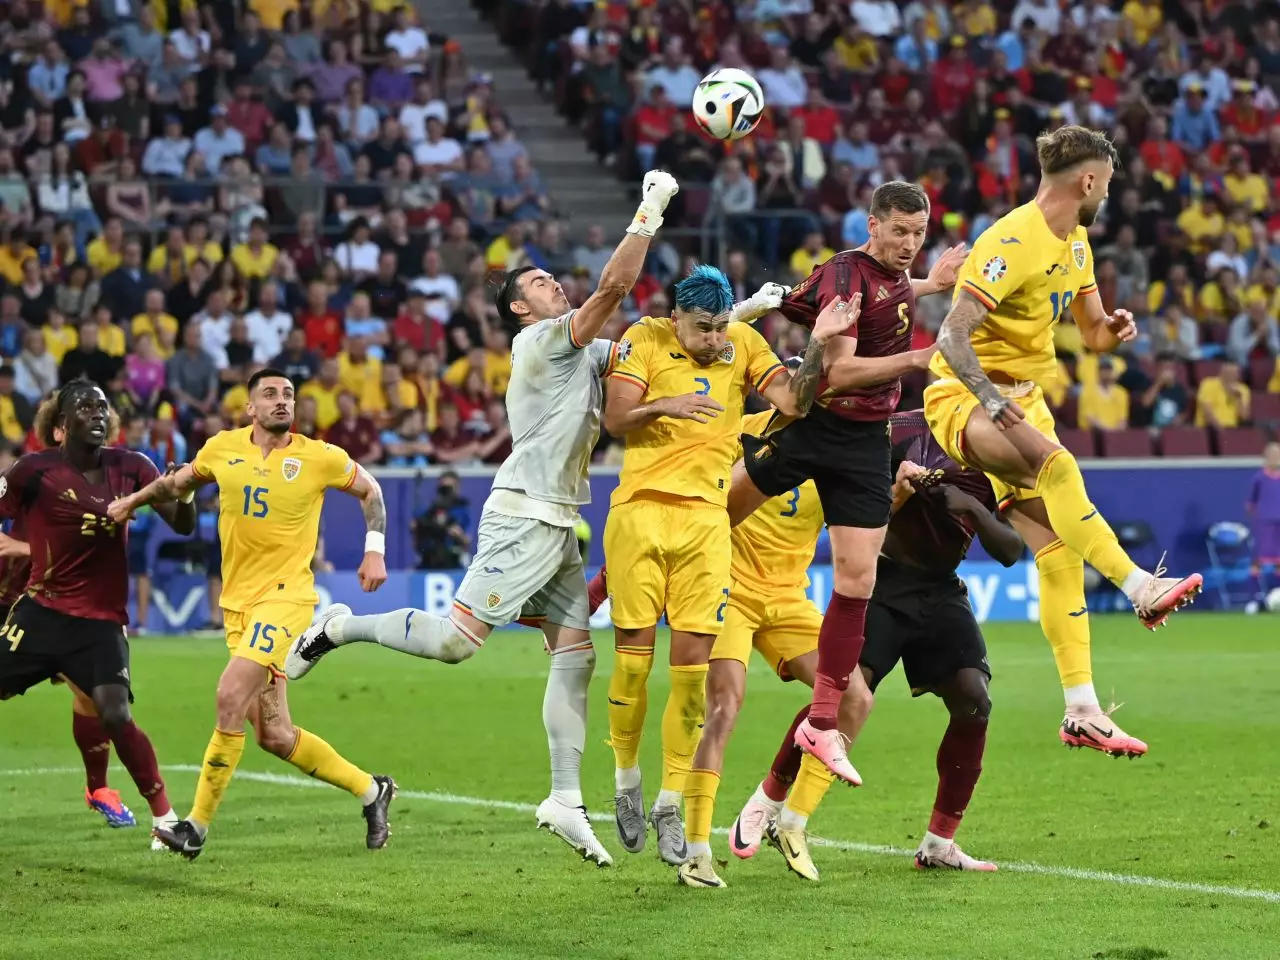 NEWS ALERT OUT pentru meciul cu Slovacia? Un titular din naționala României a acuzat dureri